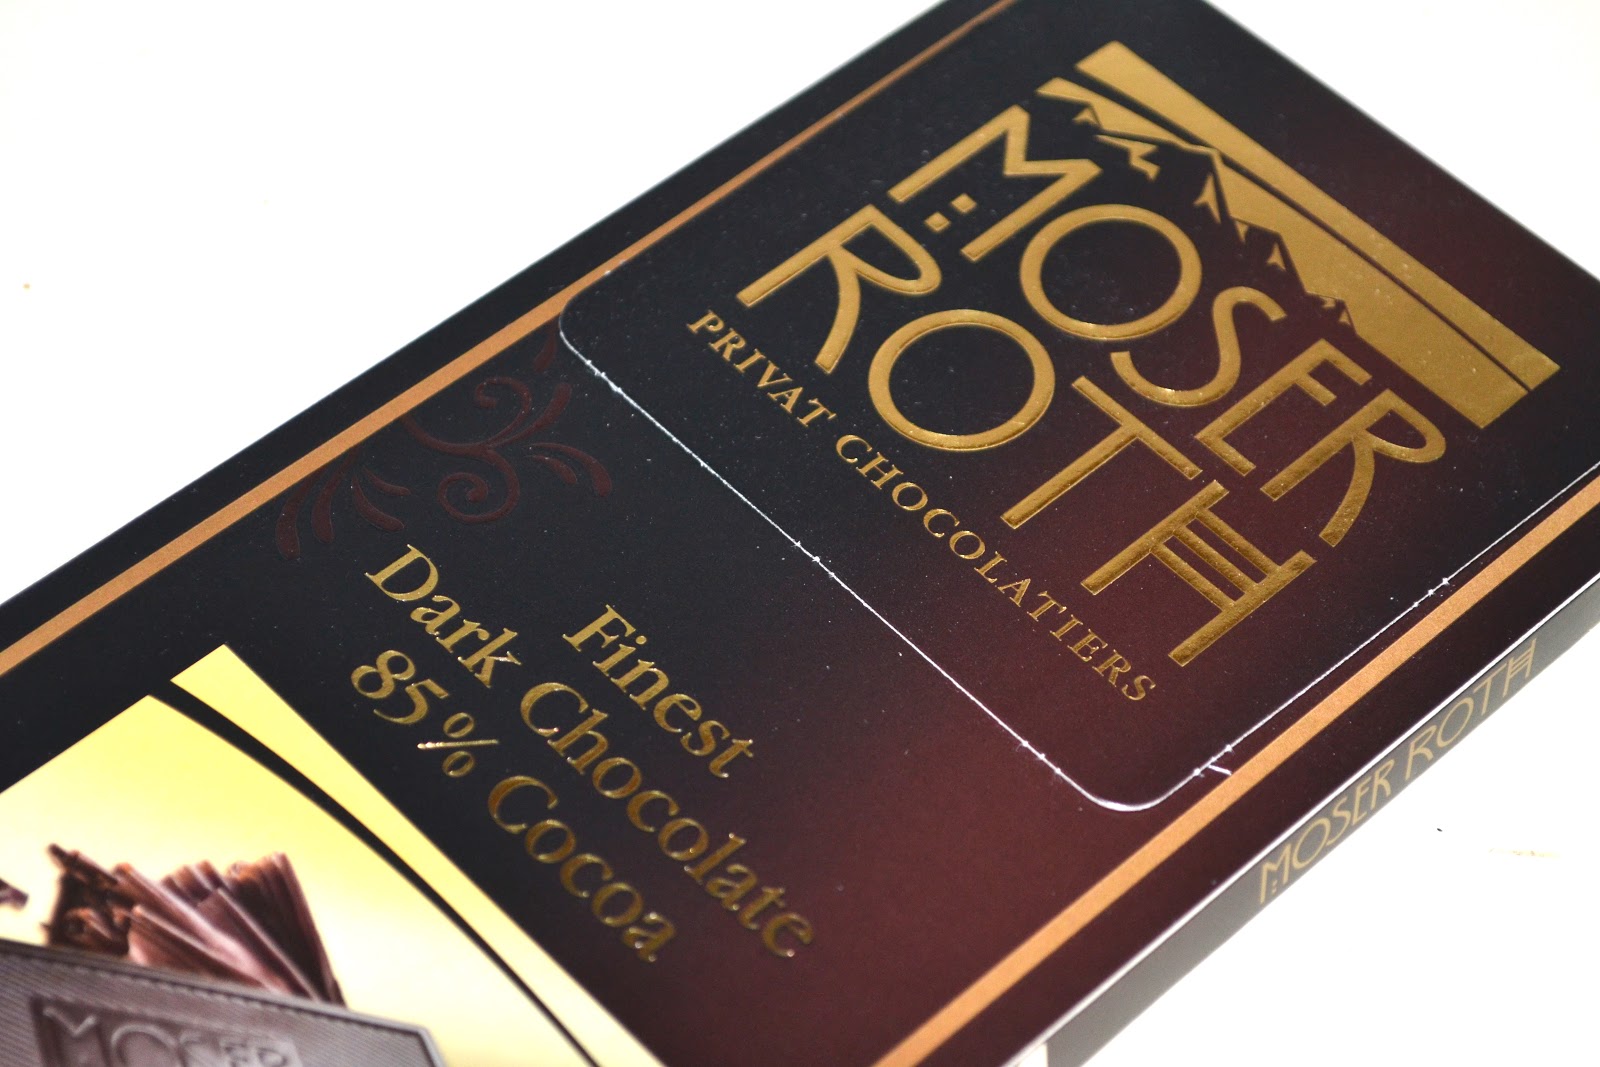 Ist Moser Roth eine gute dunkle Schokolade? - Foodly